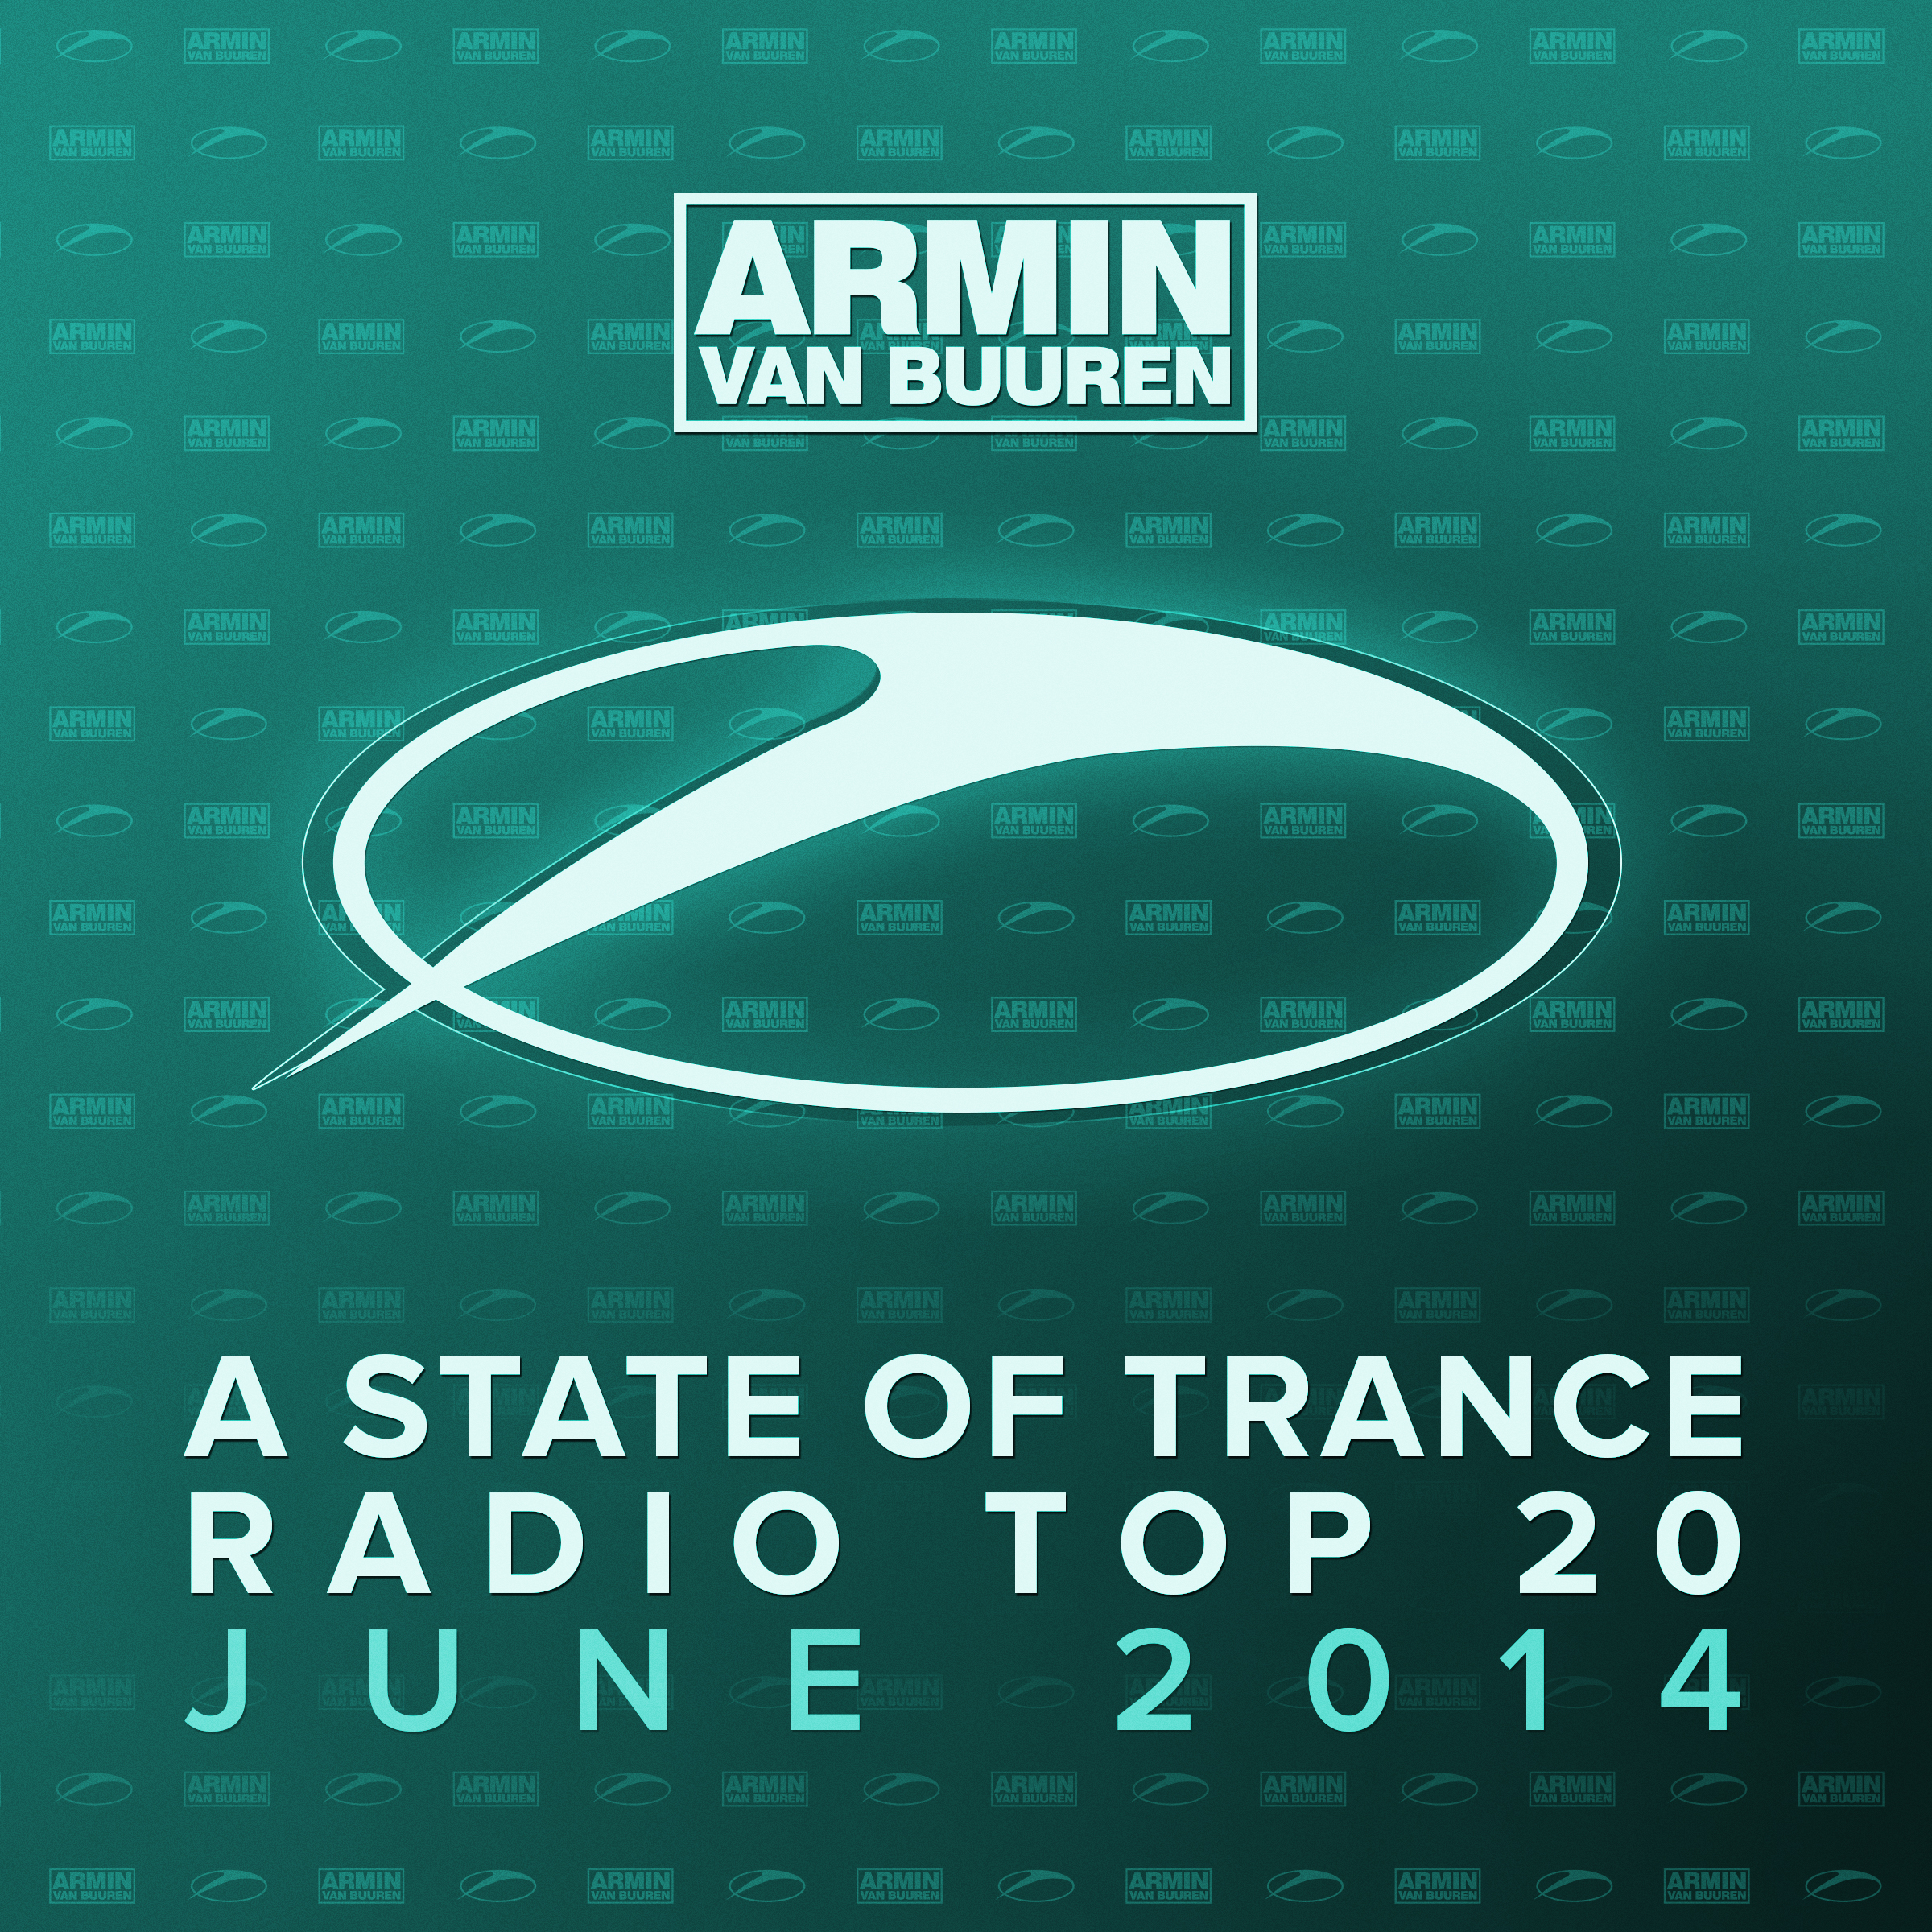 Scaricà Armin van Buuren & Andrew Rayel - EIFORYA (Ben Gold Remix) [ASOT Radio Top 20 - June 2014]